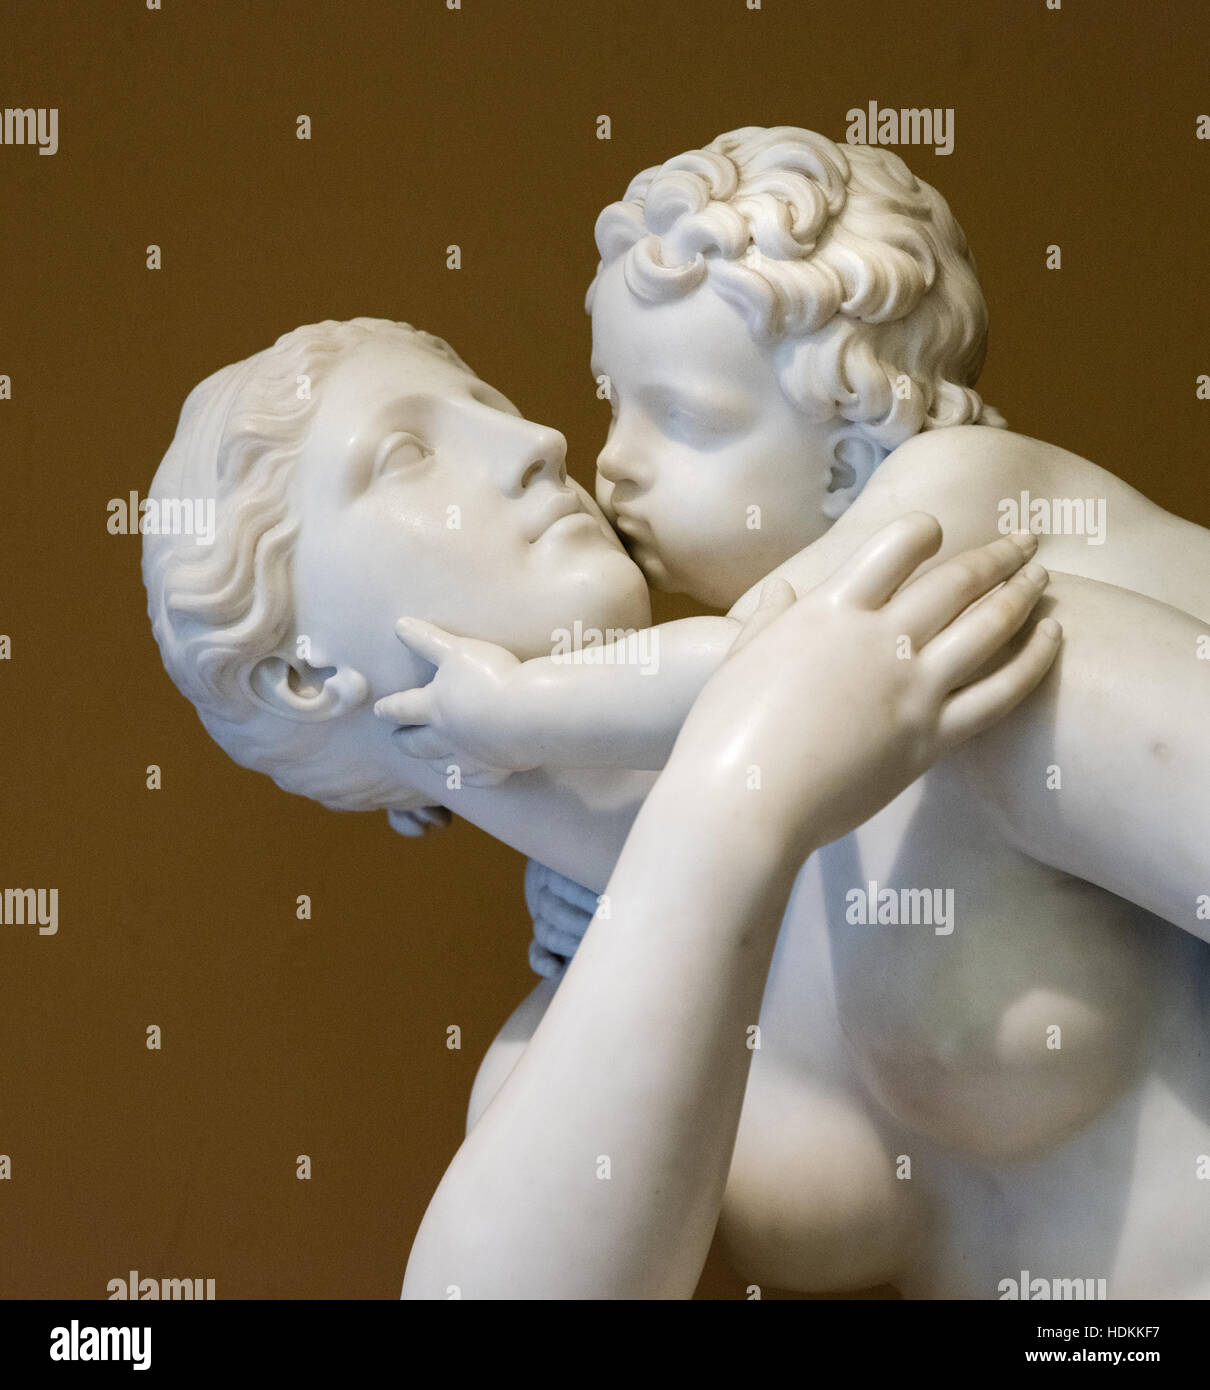 Sculpture en marbre blanc de la mère et l'enfant d'idéaliser la joie et la tendresse de la maternité - Victoria and Albert Museum London Banque D'Images